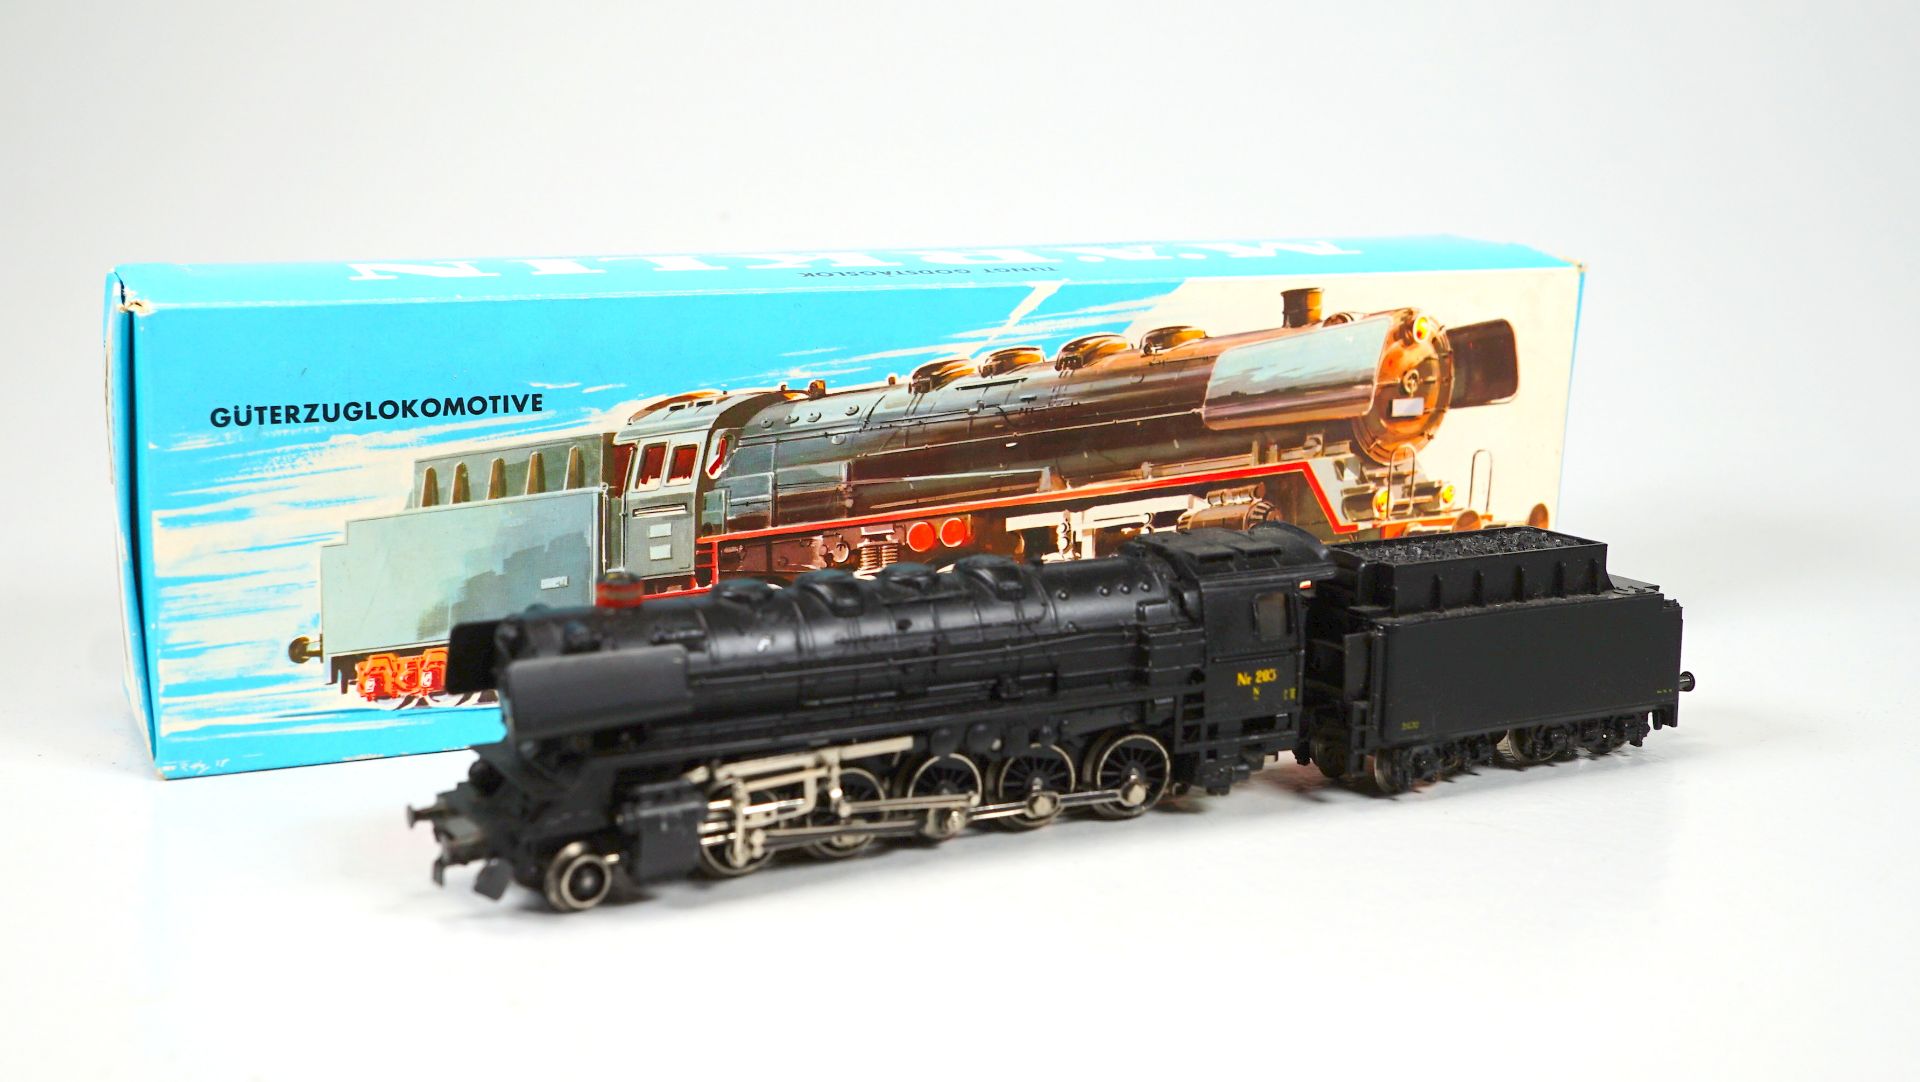 3045 Güterzuglokomotive in OVP